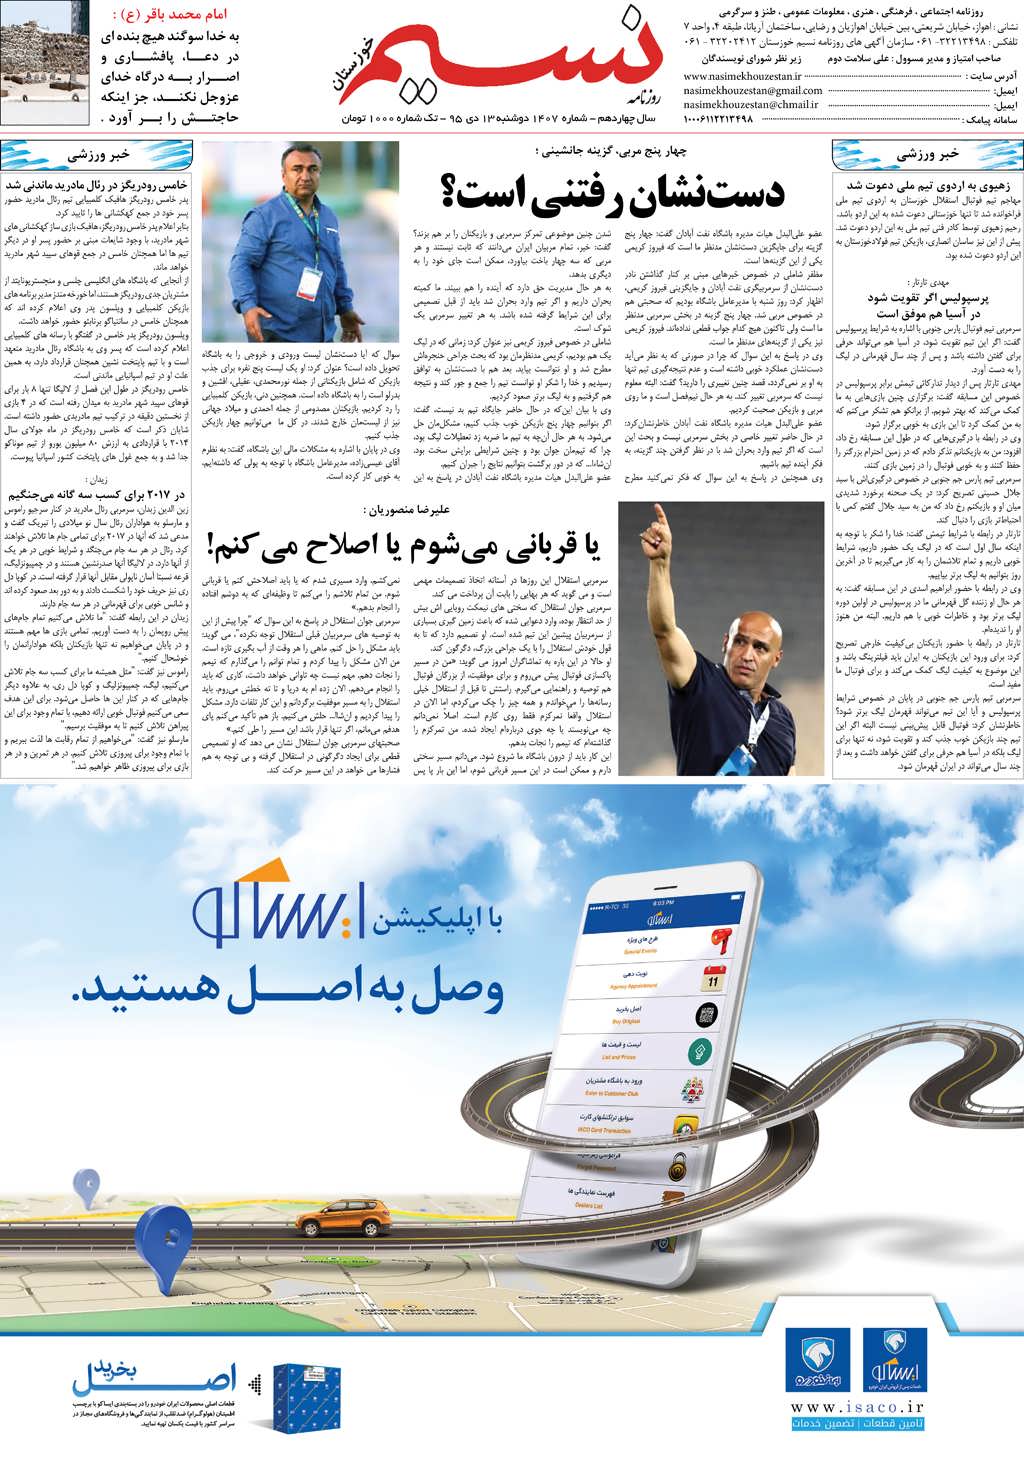 صفحه آخر روزنامه نسیم شماره 1407